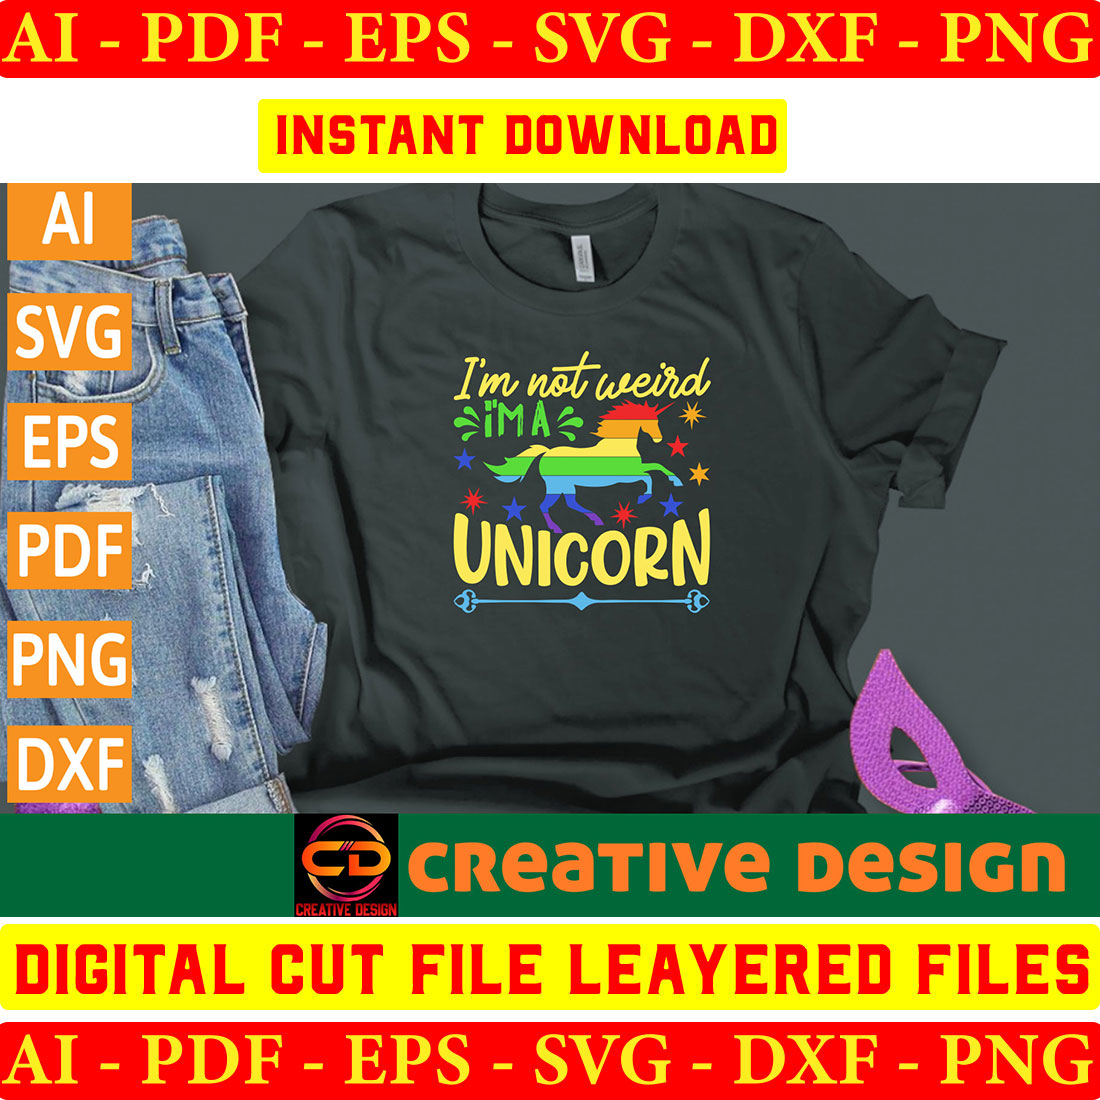 Unicorn T-shirt Design Bundle Vol-2 preview image.